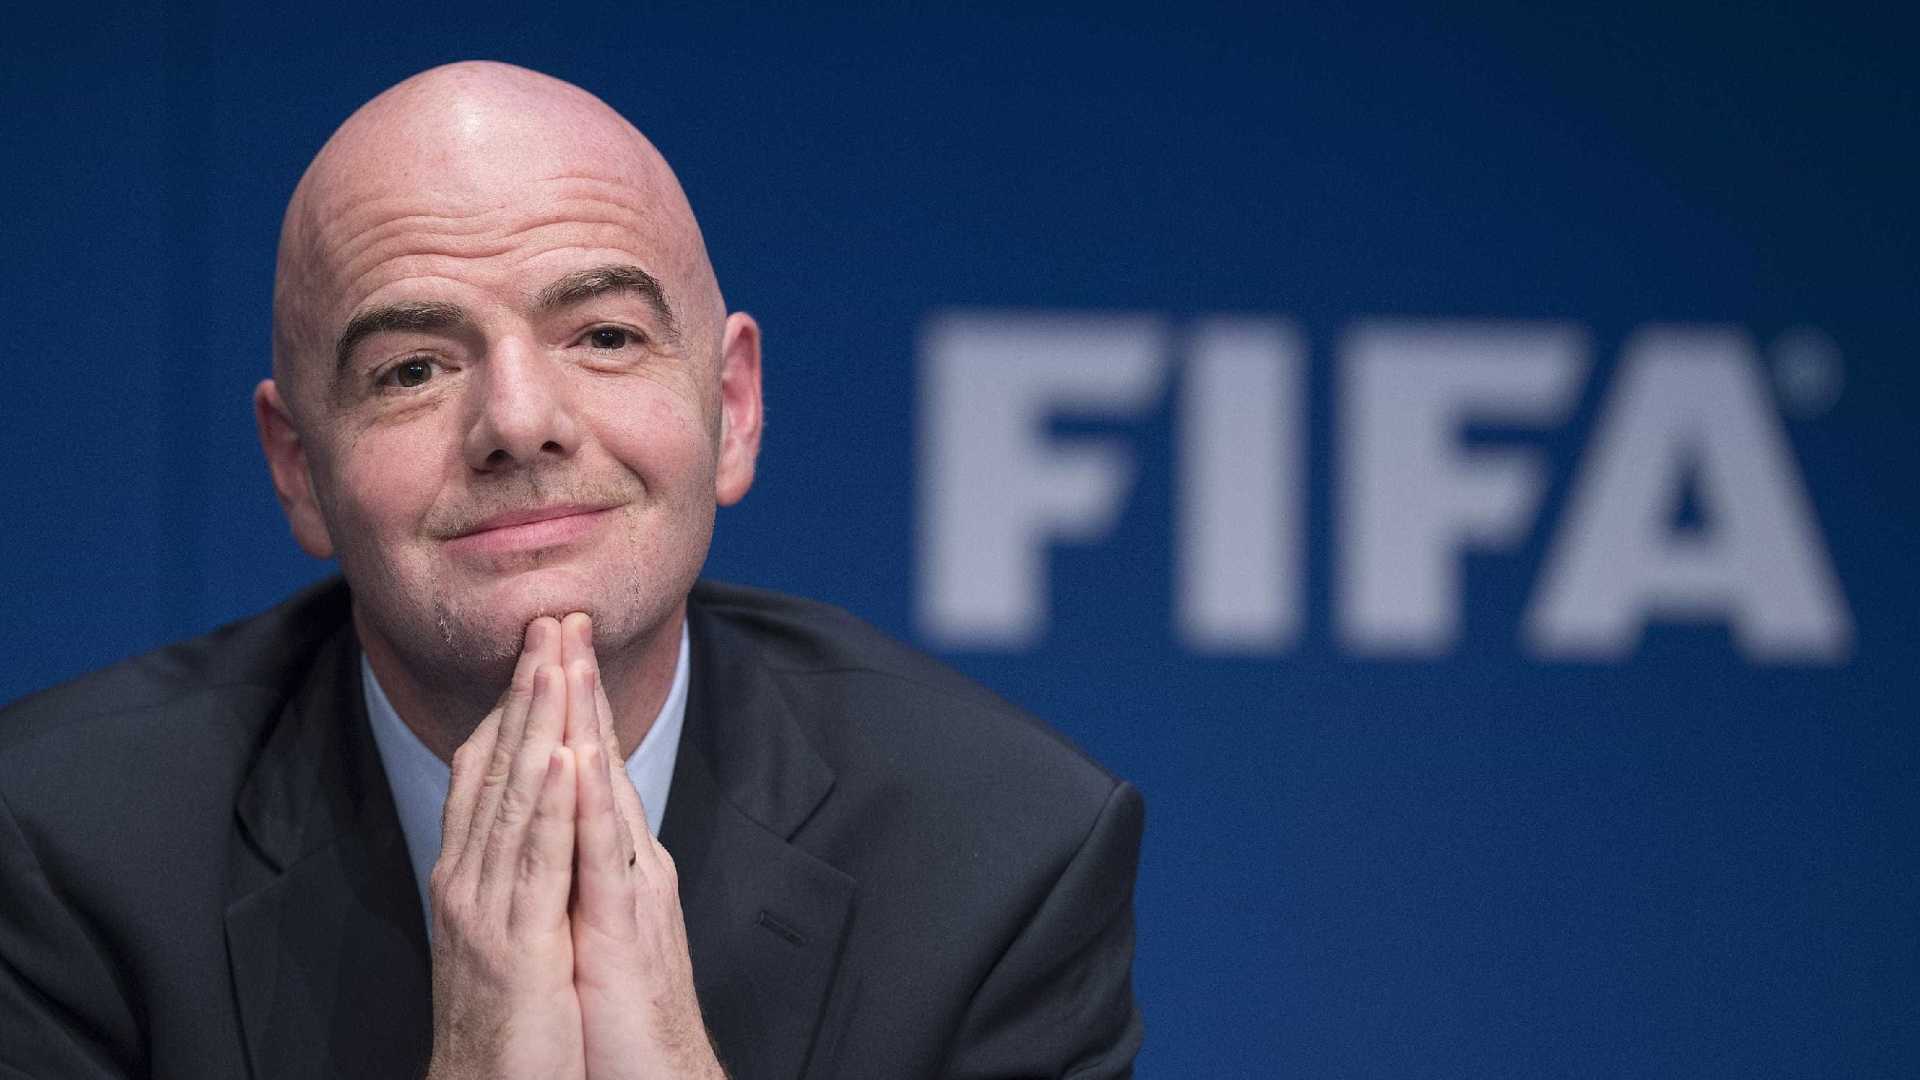 Em congresso da Fifa, Infantino insiste em Copa de 2022 com 48 países